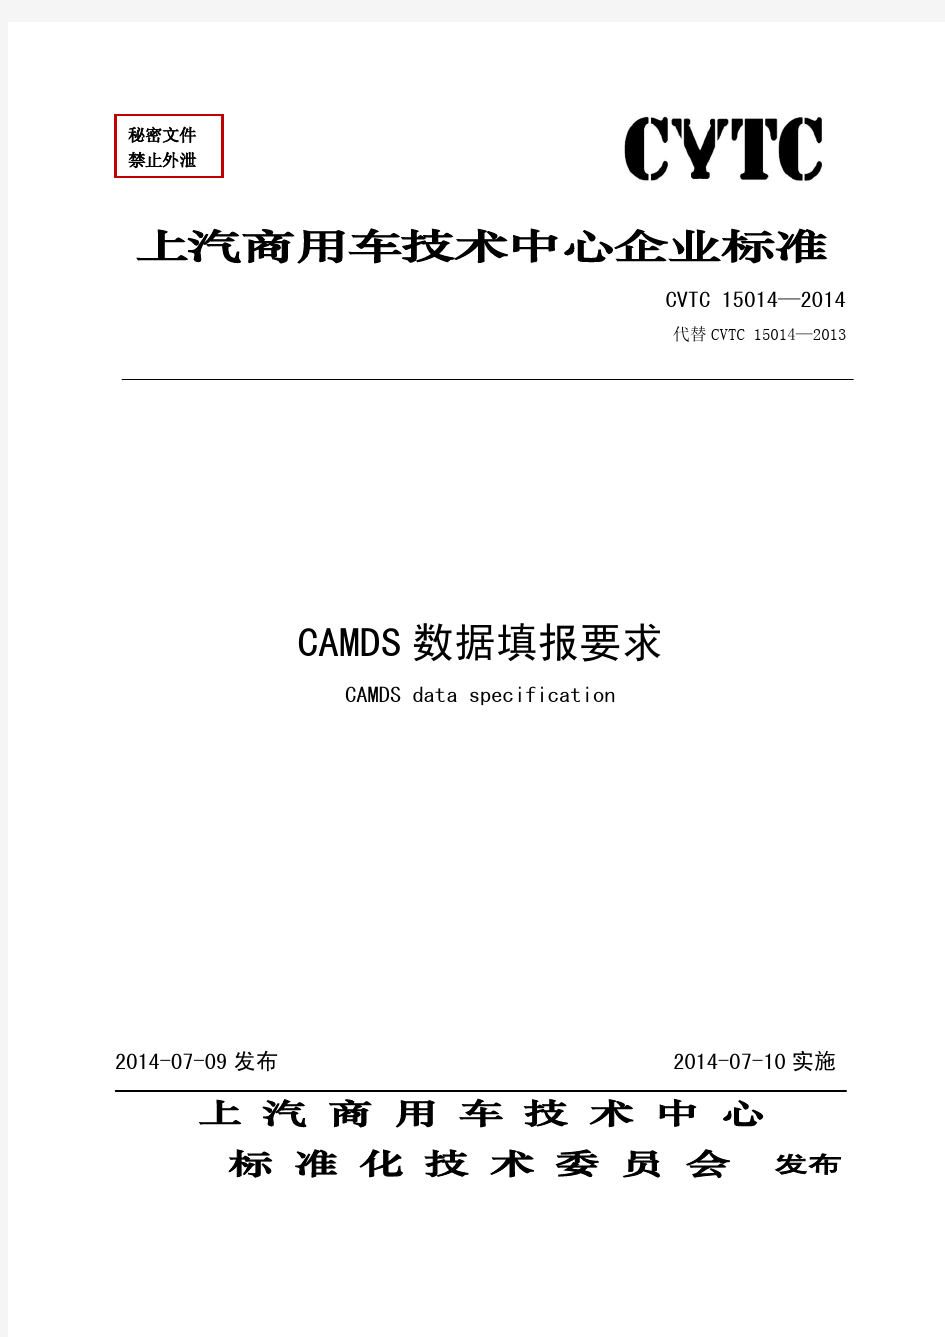 CVTC 15014-2014 CAMDS数据填报要求